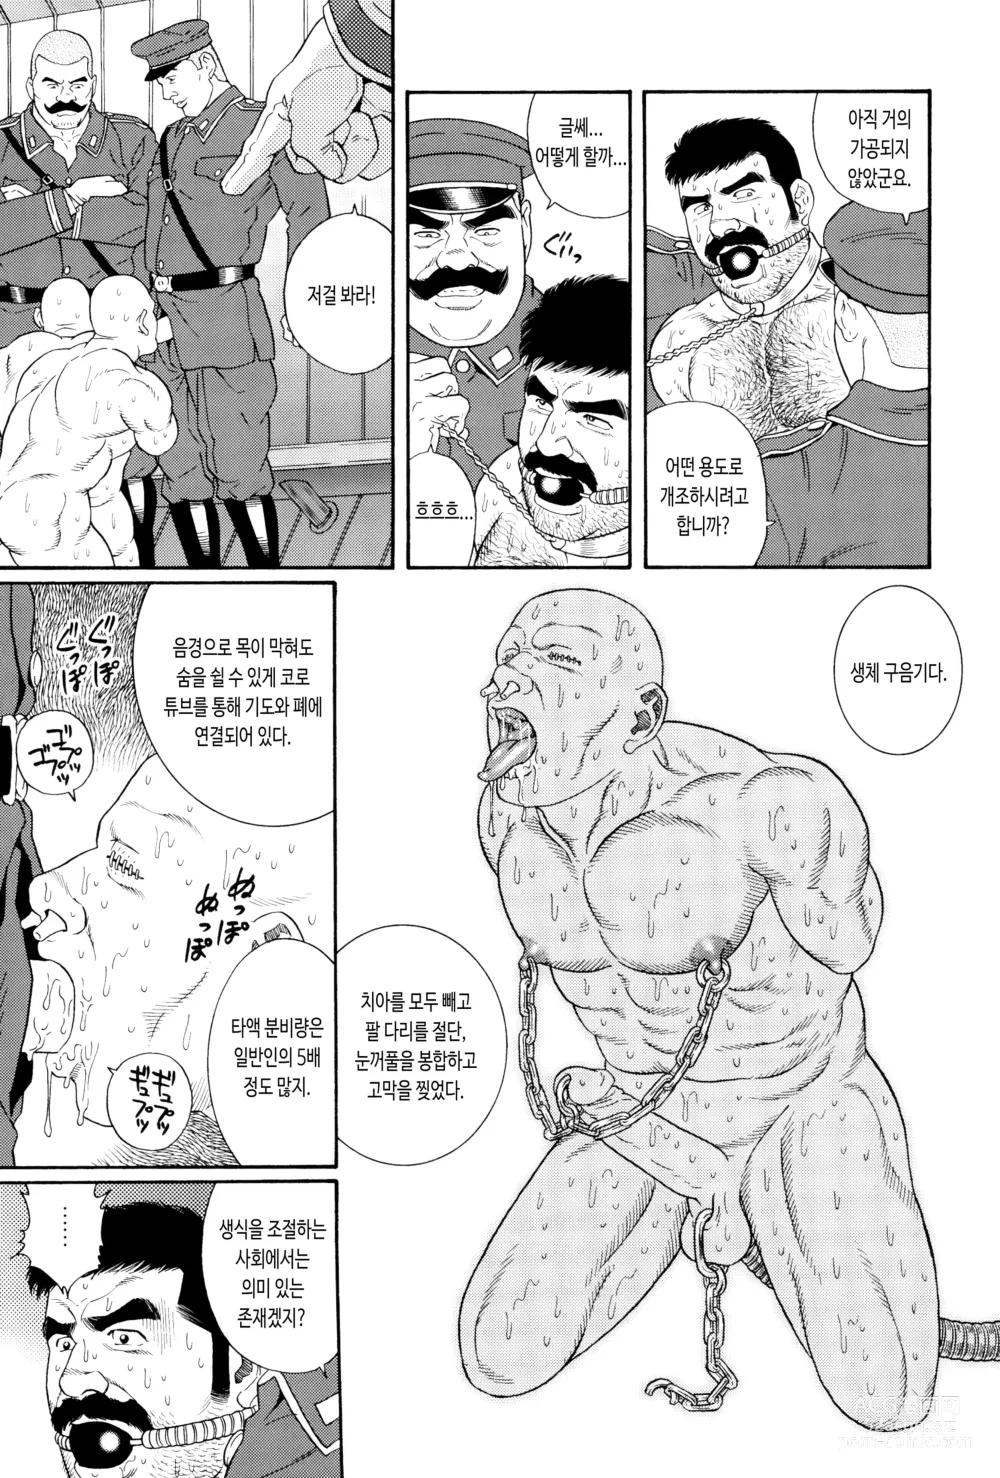 Page 11 of manga ZENITH